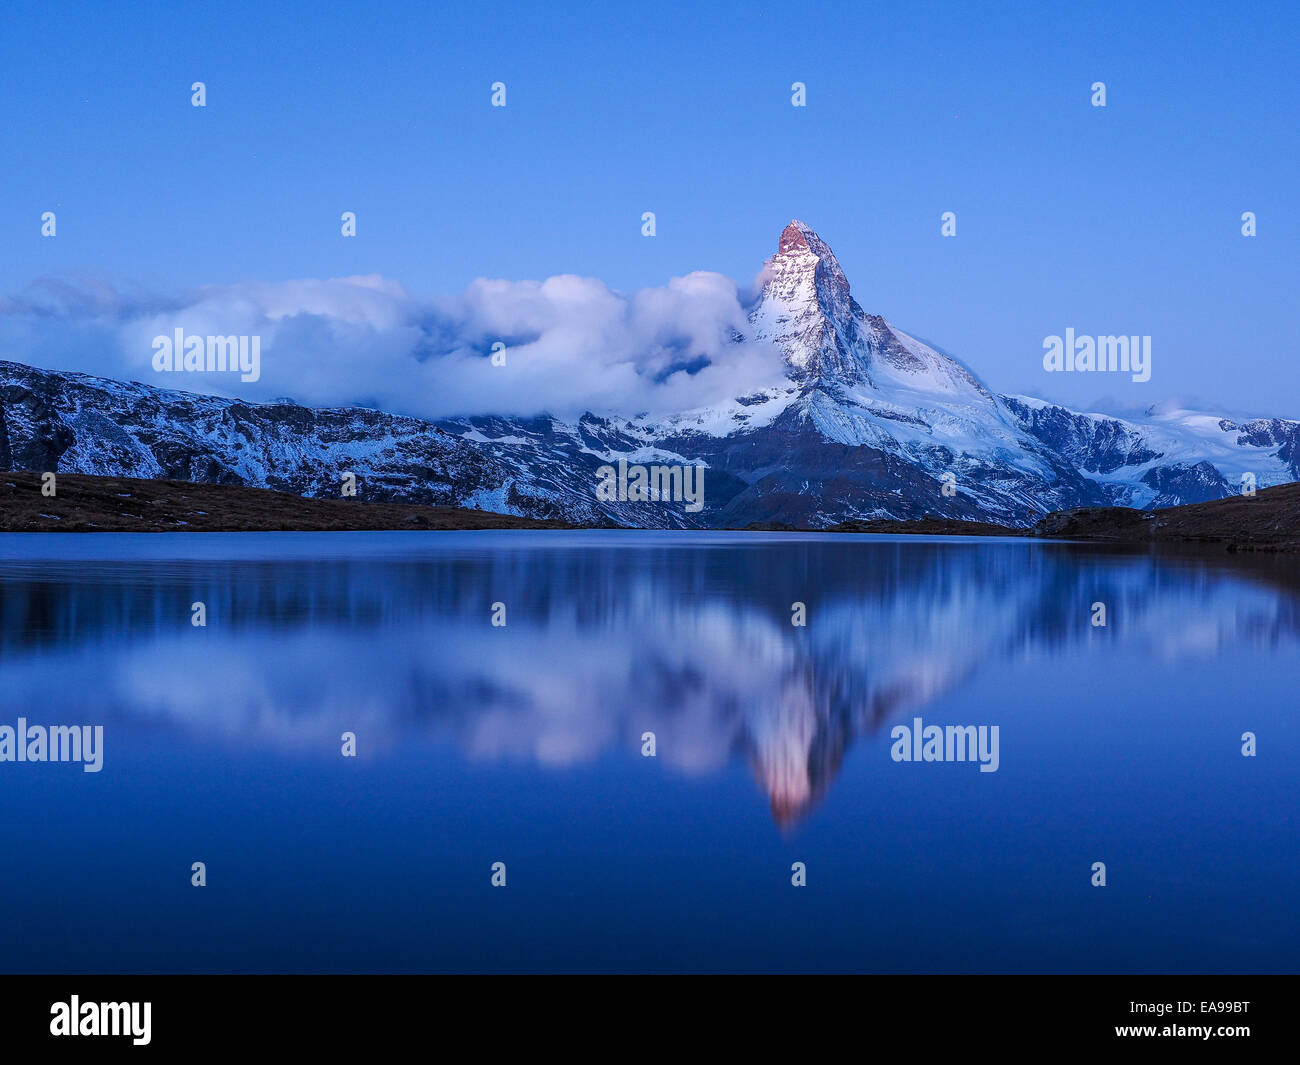 Matterhorn during night with relfection in StelliSee, Zermatt, Switzerland Stock Photo